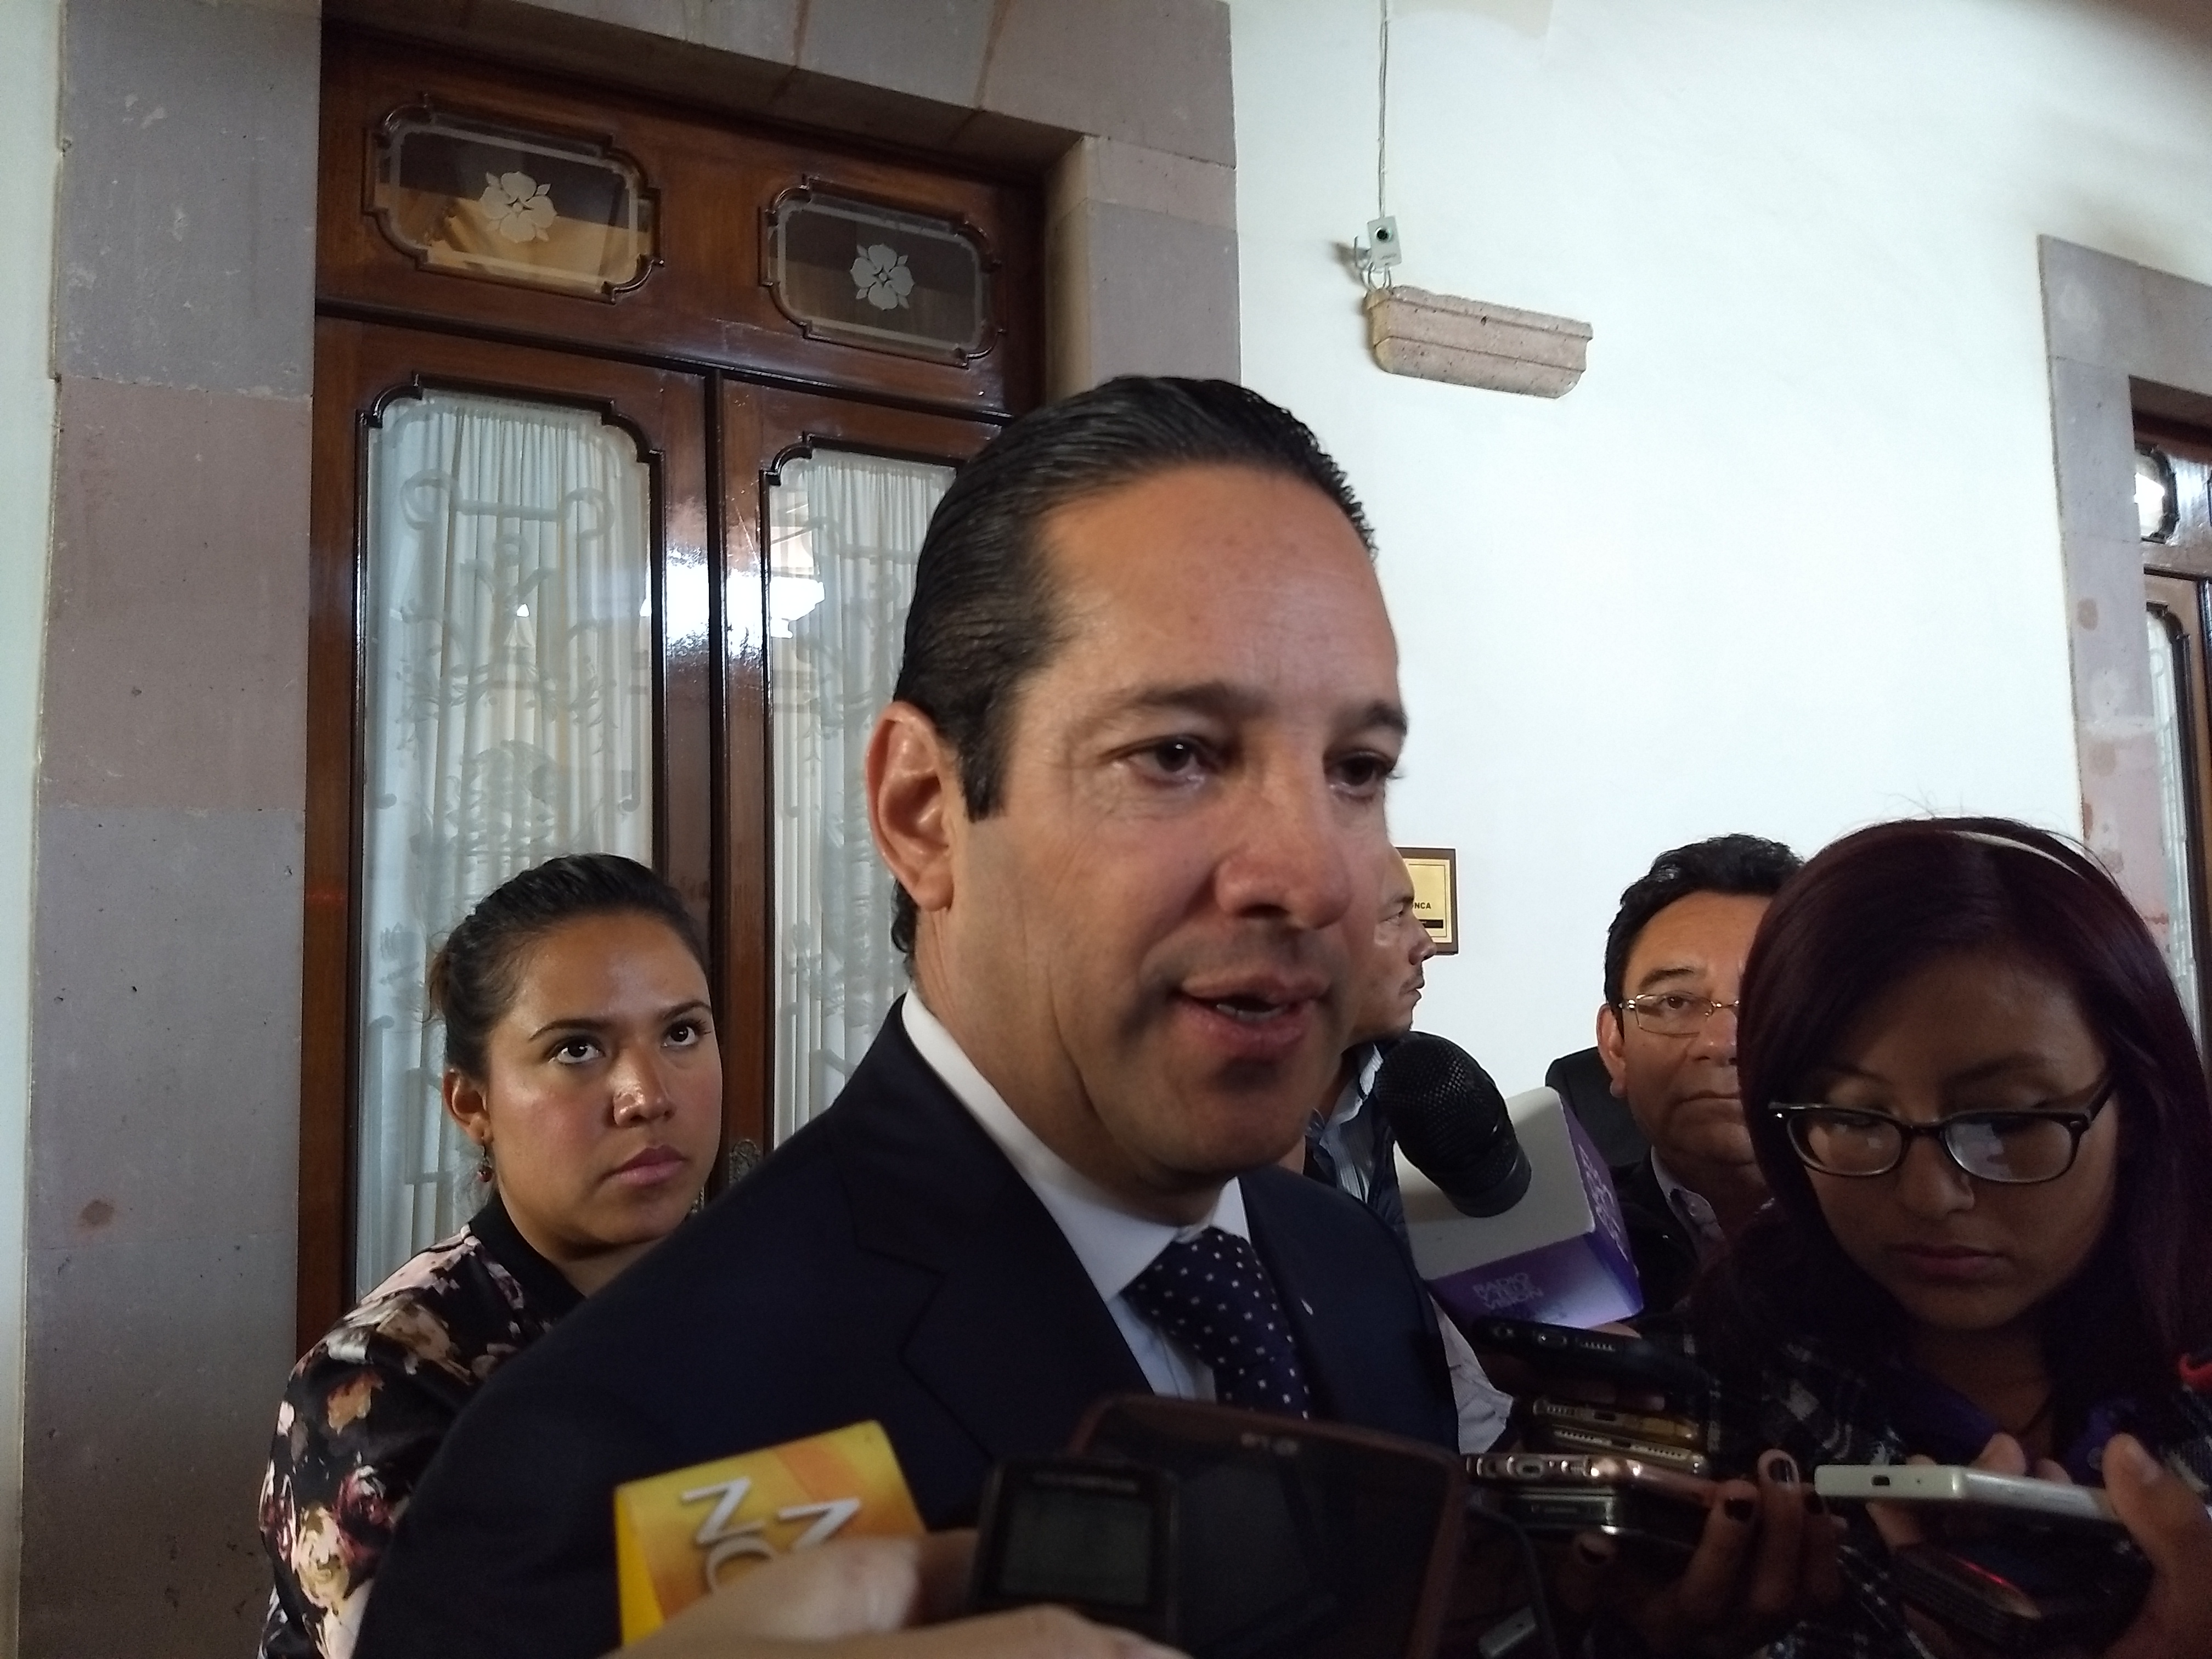  Pancho Domínguez pide a actores políticos “no dividir México” durante proceso electoral